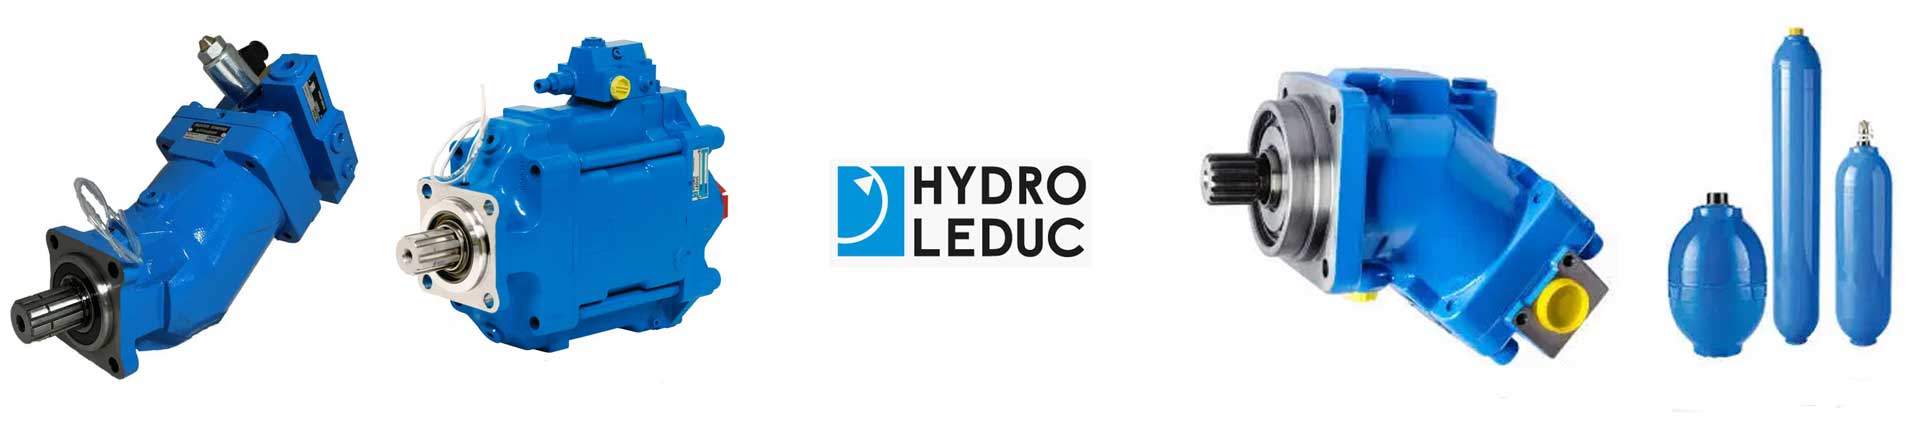 力度克HYDRO LEDUC产品系列